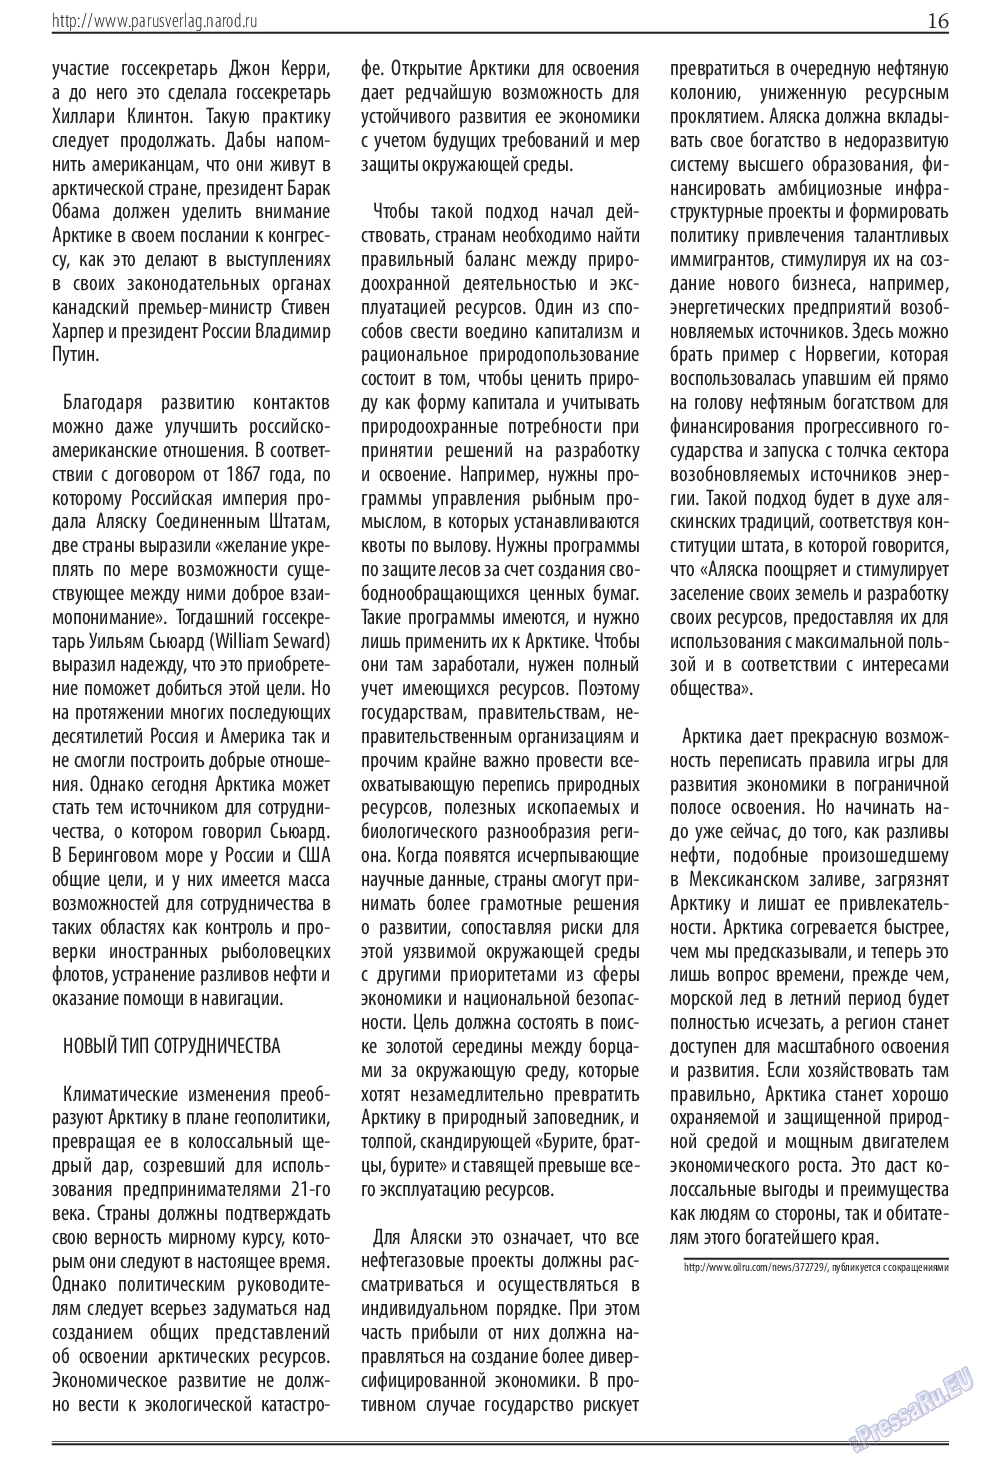 Парус (газета). 2014 год, номер 12, стр. 16